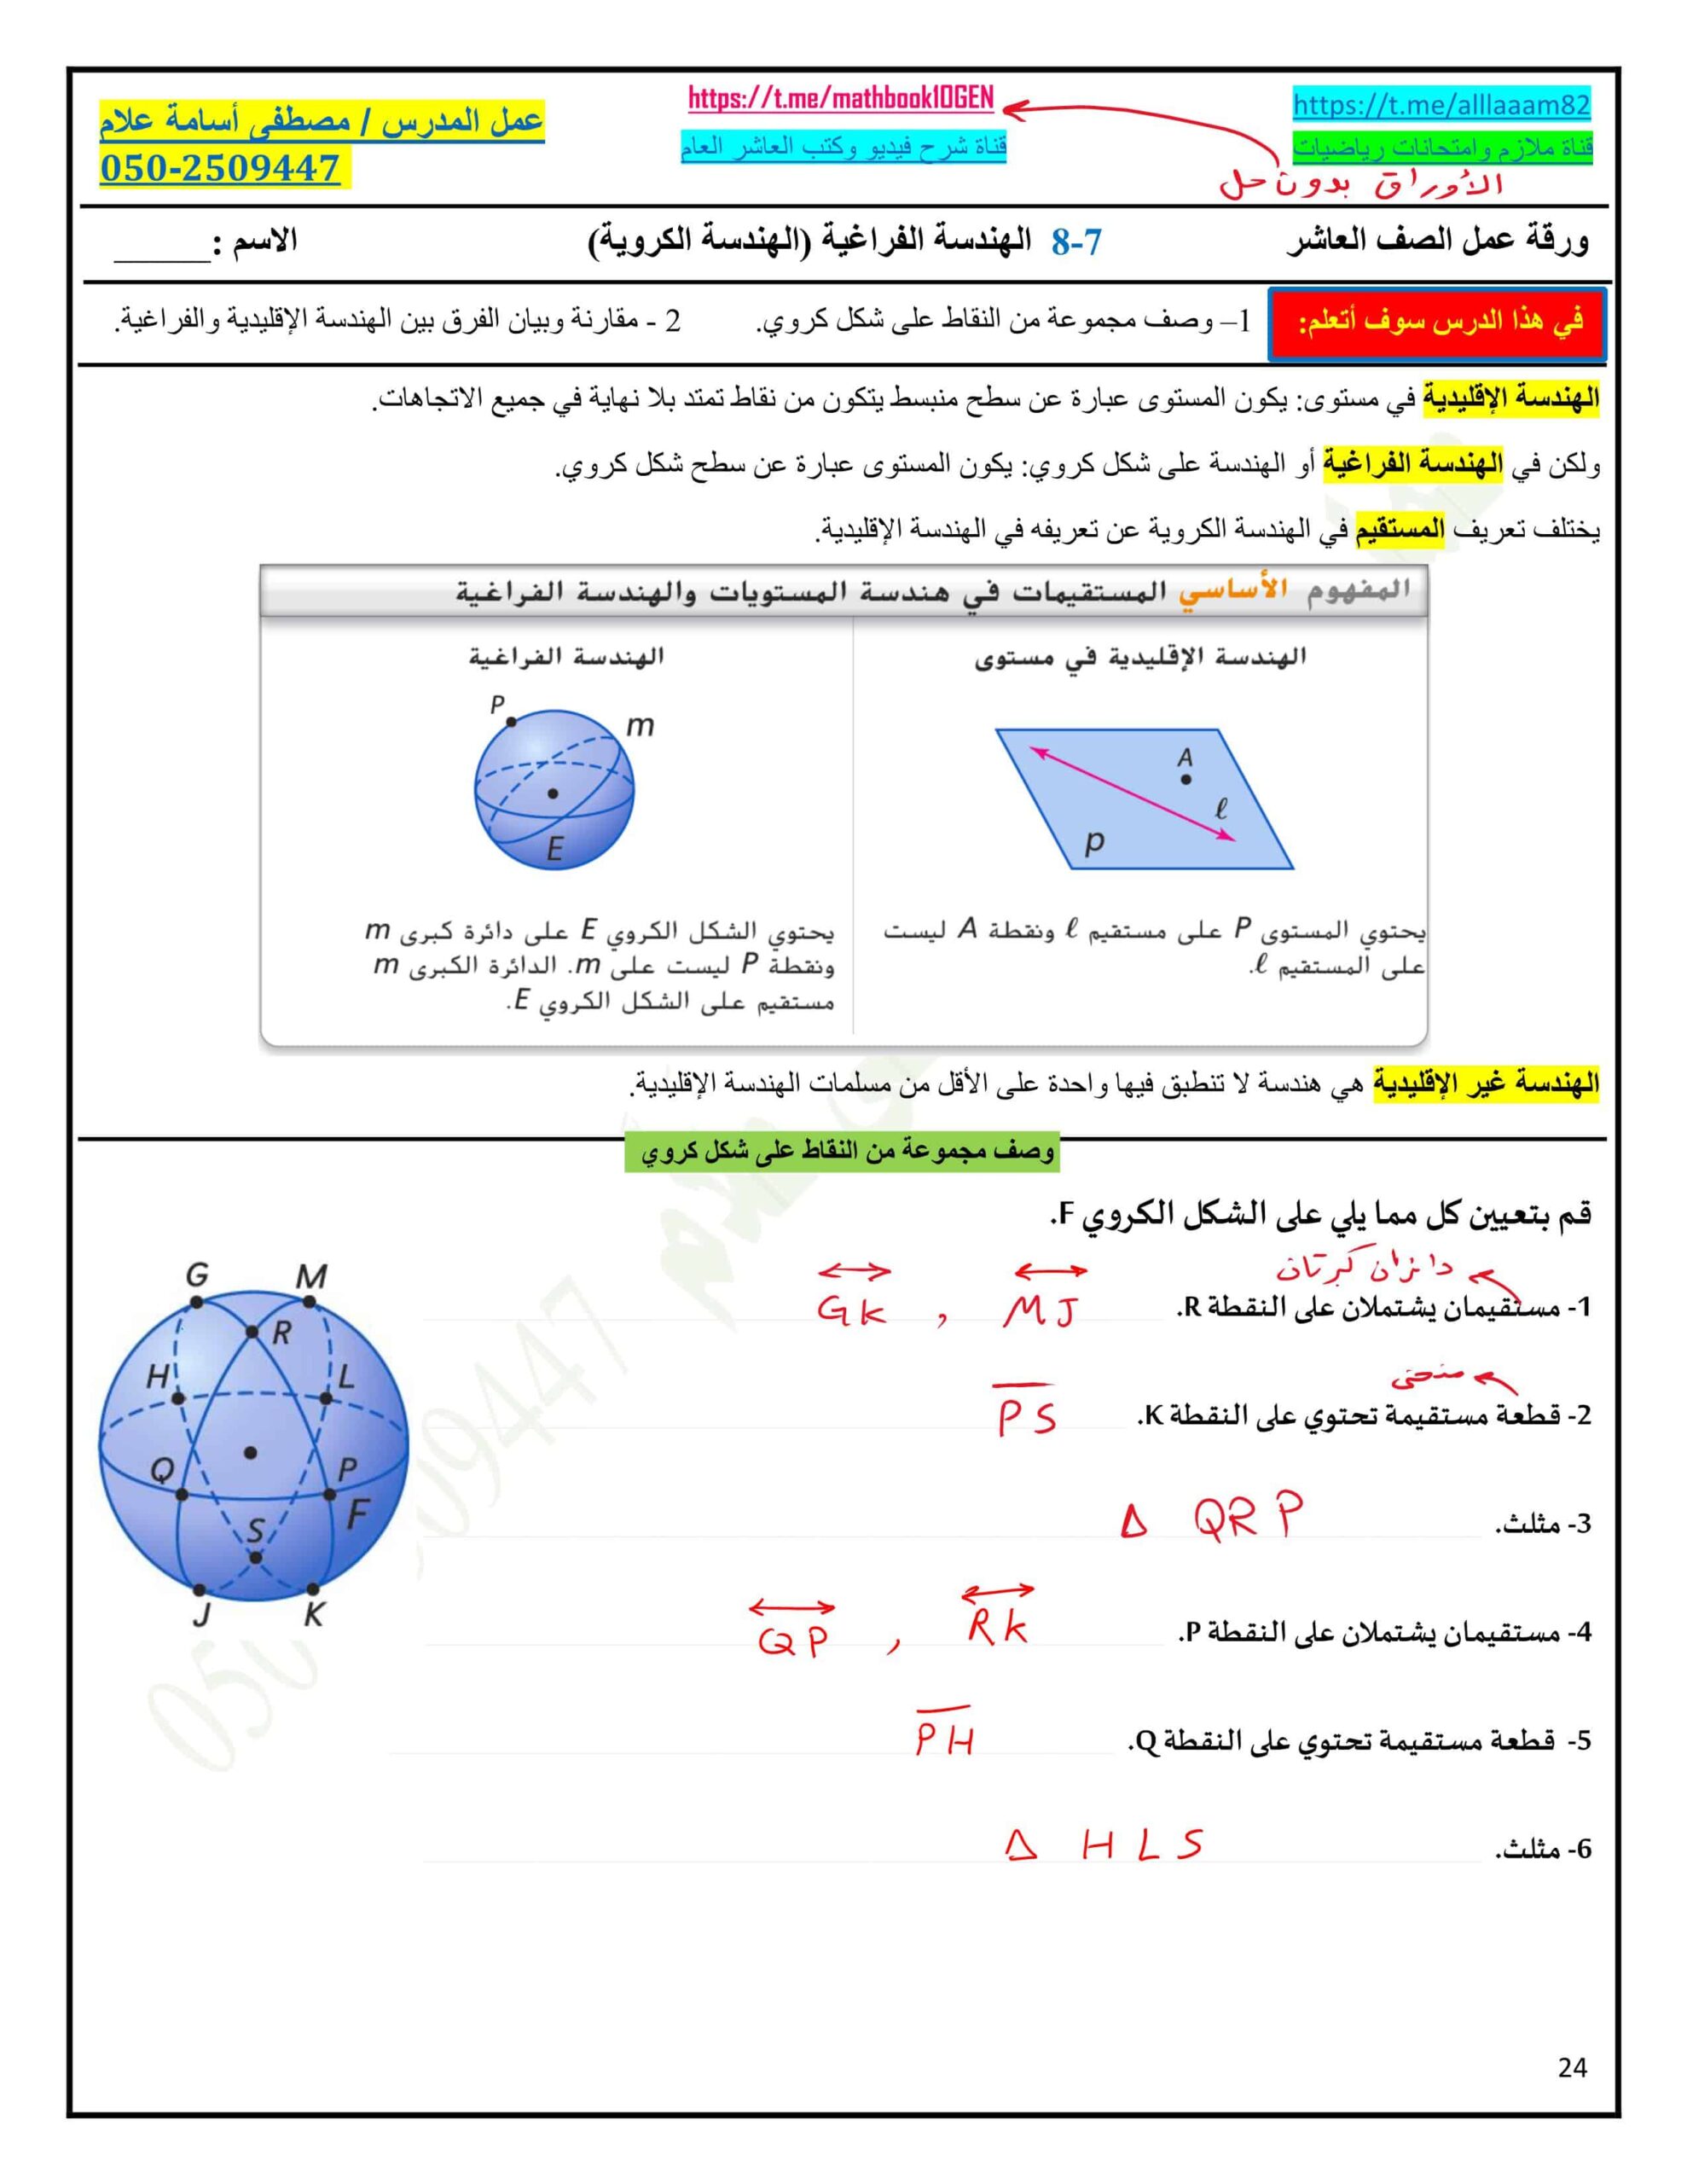 حل أوراق عمل الهندسة الفراغية - الهندسة الكروية الرياضيات المتكاملة الصف العاشر عام